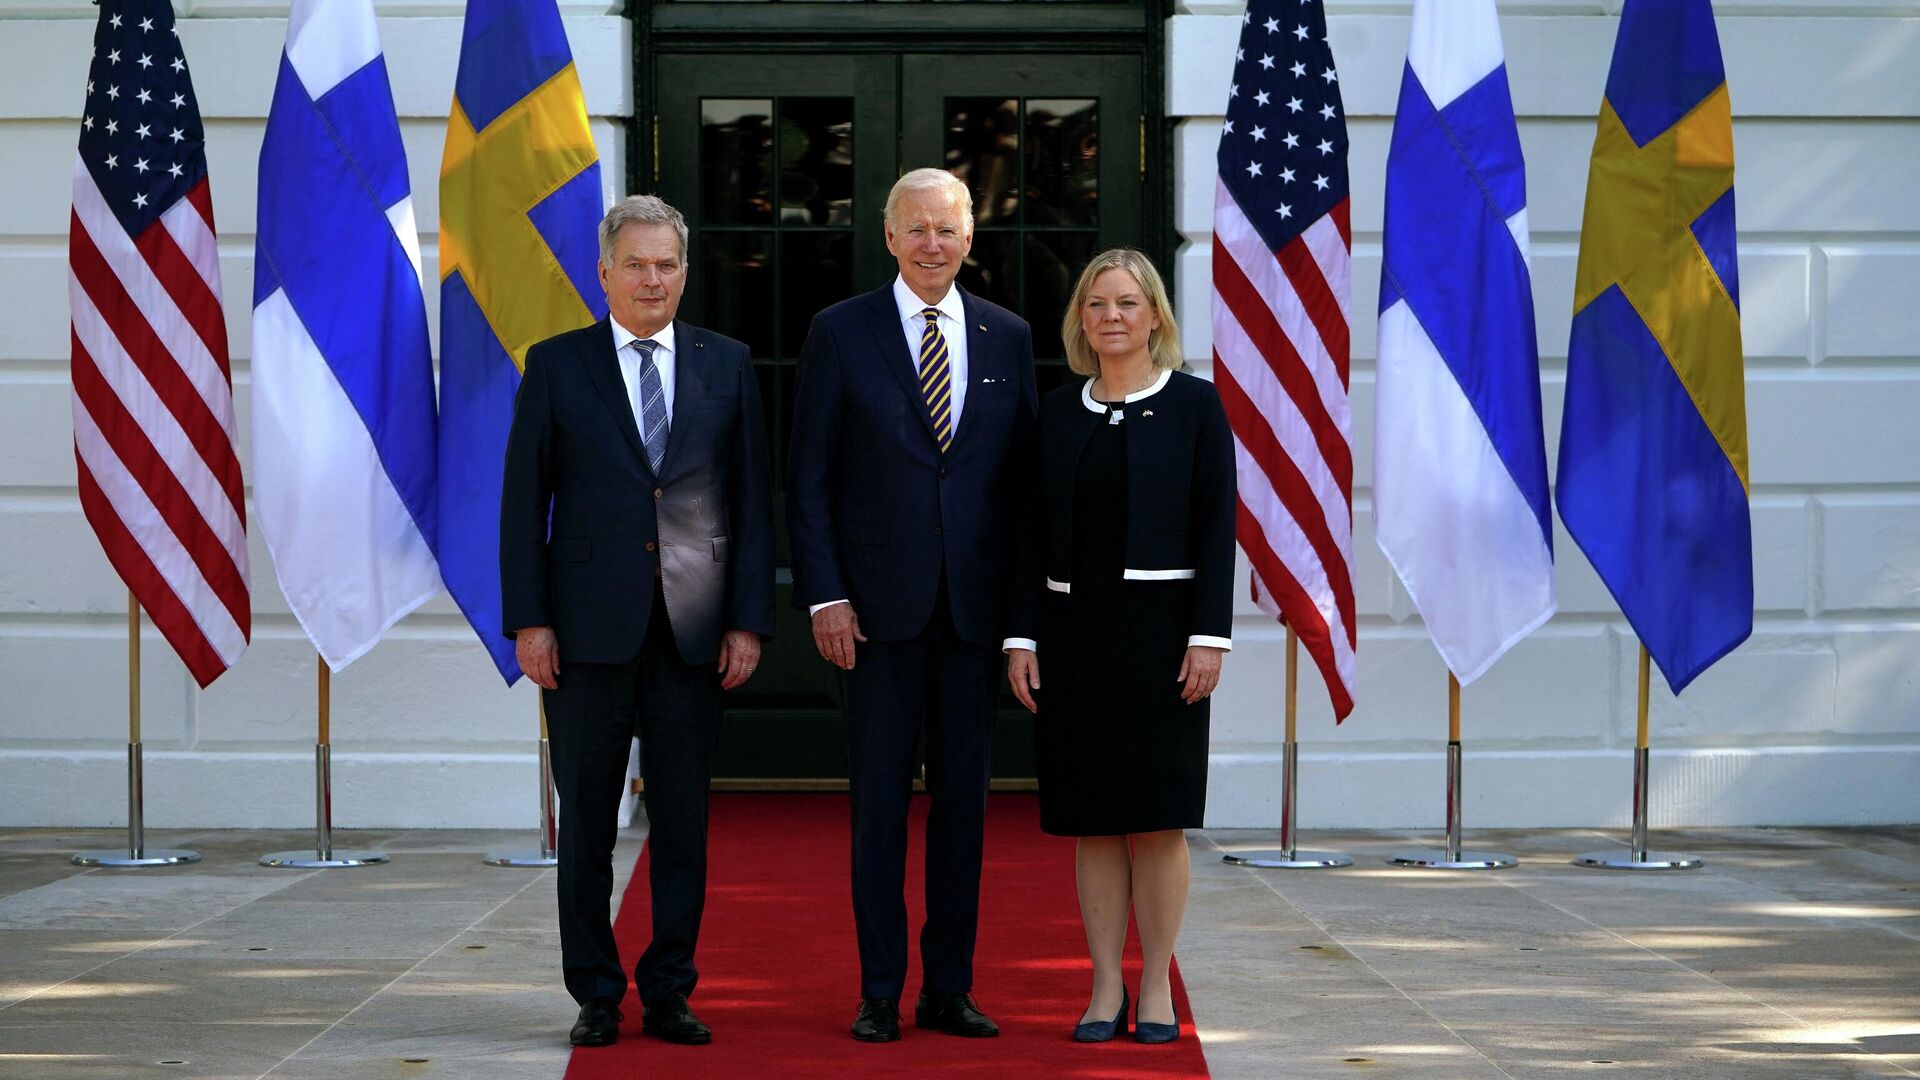 Президент США Джо Байден, призедент Финляндии Саули Ниинисте и премьер-министр Швеции Магдалена Андерссон во время встречи в Белом доме. 19 мая 2022 - РИА Новости, 1920, 19.05.2022